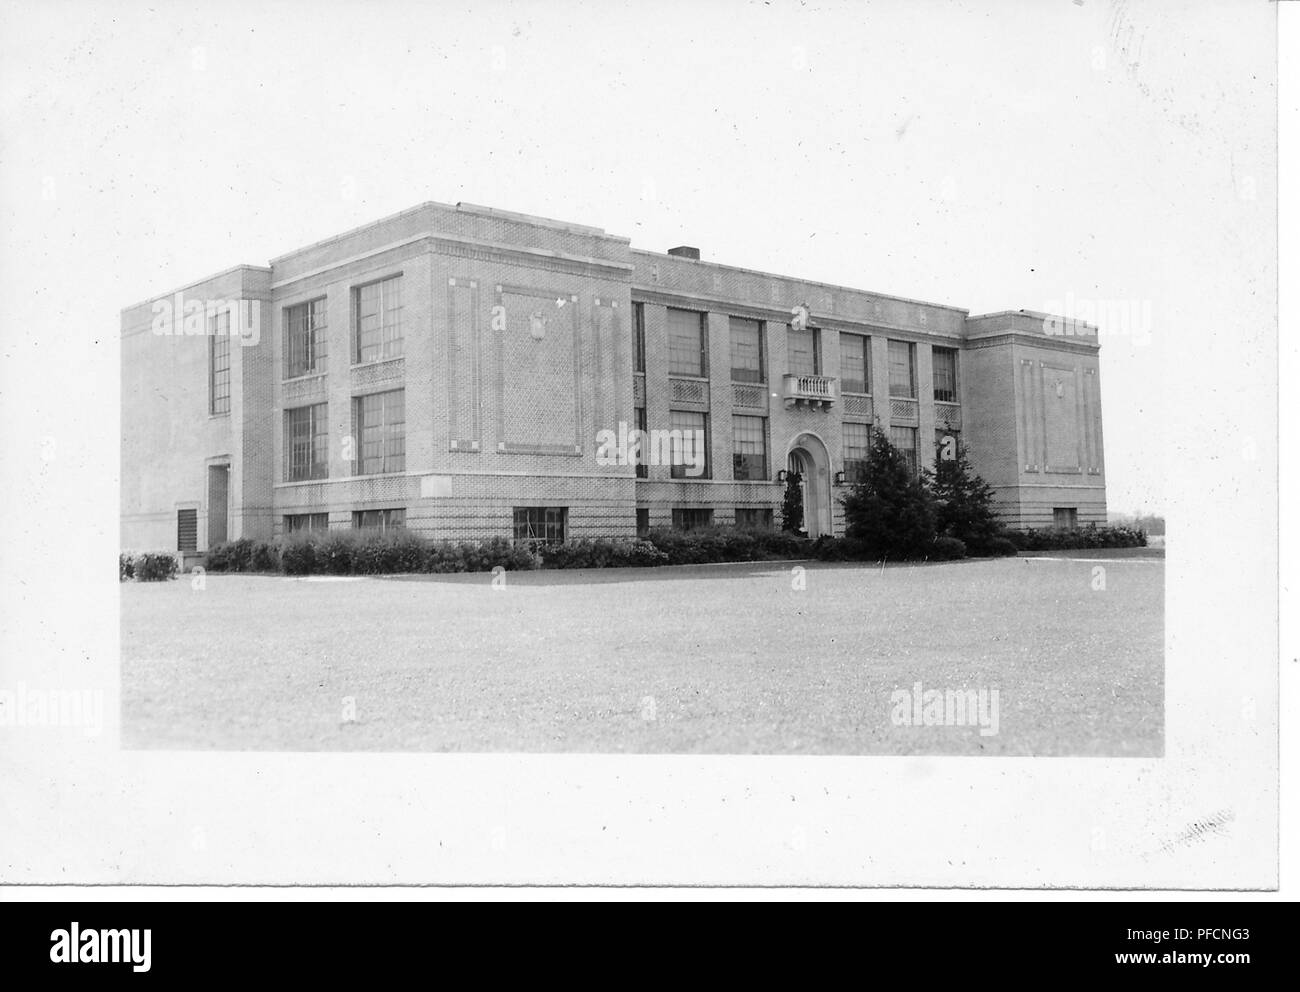 Schwarz-weiß Foto, mit einem leicht geneigten Blick auf eine große, überdachte, Art Deco Gebäude mit einer Fassade aus Backstein, große rechteckige Fenster und ein gewölbtes Eingangsportal, wahrscheinlich in Ohio in den zehn Jahren fotografierte nach dem Zweiten Weltkrieg, 1950. () Stockfoto